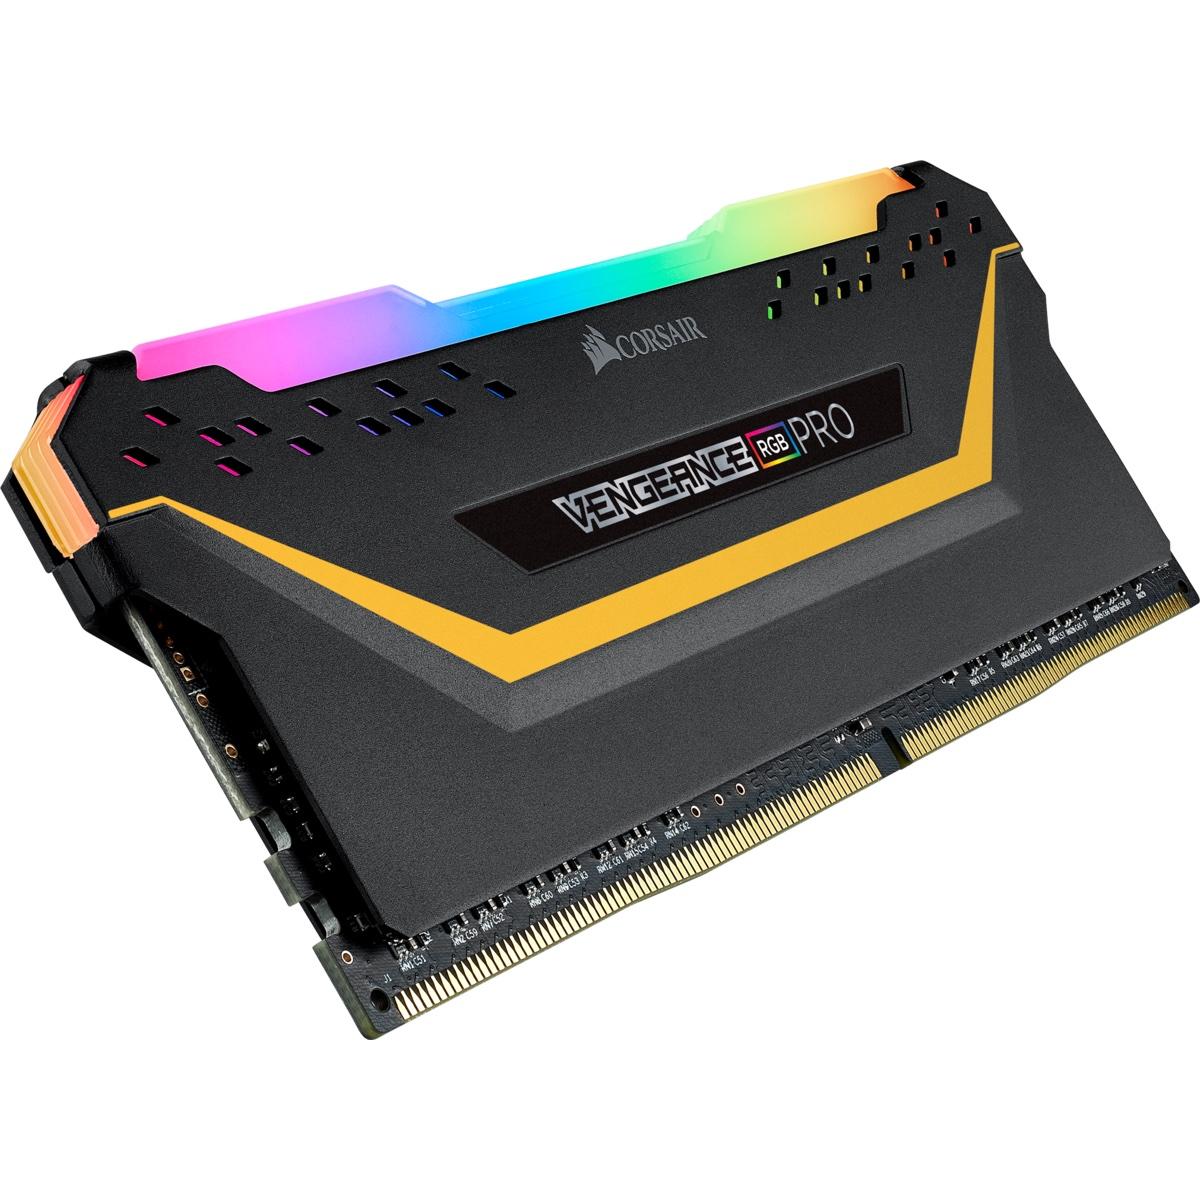 Памет Corsair Vengeance PRO RGB TUF Black 32GB(2x16GB) DDR4 PC4-25600 3200MHz CL16 CMW32GX4M2E3200C16-TUF-2